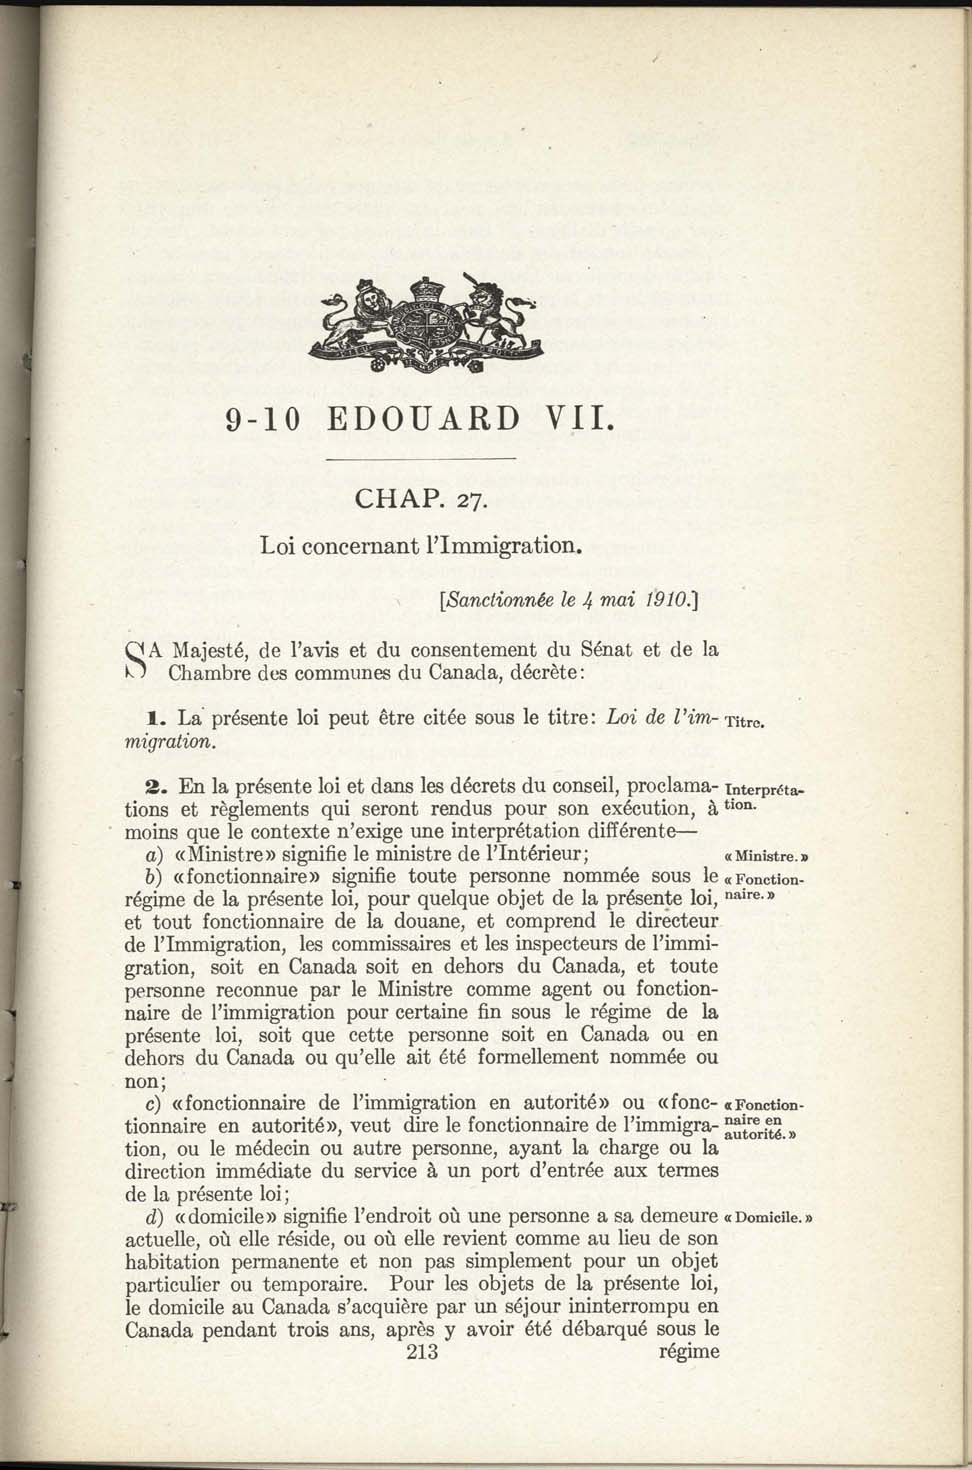 Chap 27 Page 213 L’Acte d’immigration, 1910